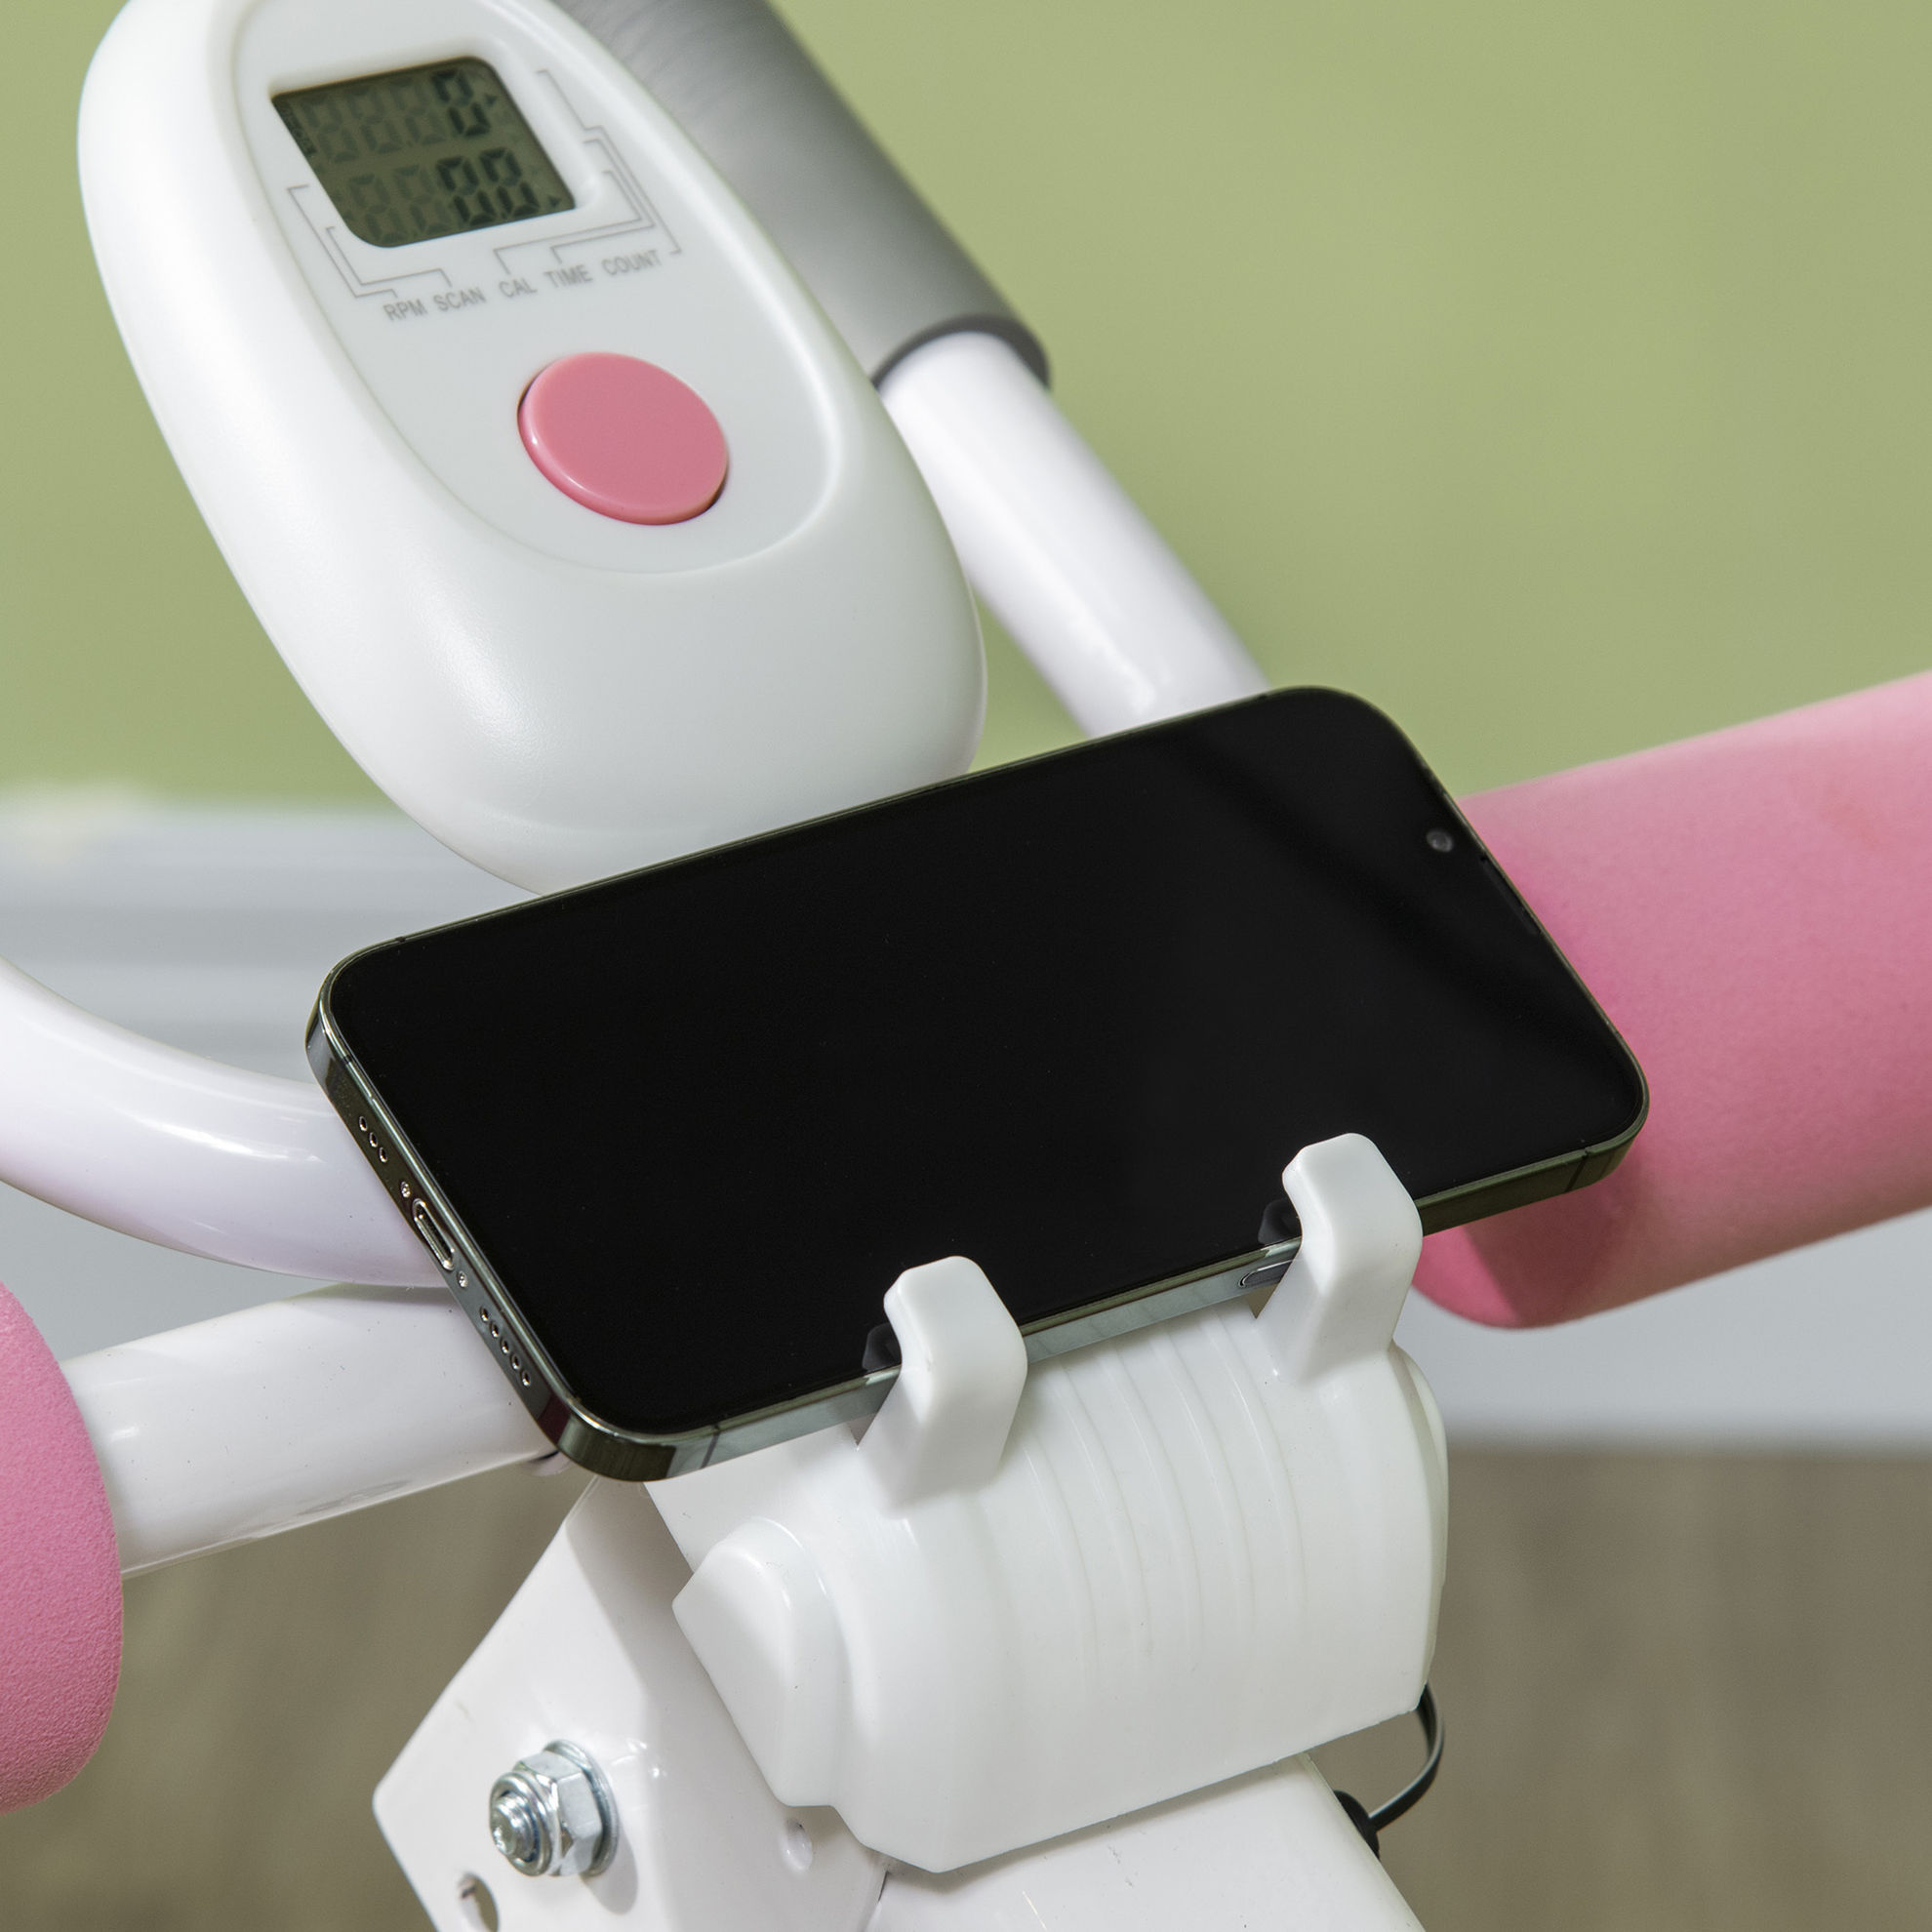 Bauchtrainer mit LCD-Monitor, Handyhalterung und Polstern für die Knie  weiß, rosa Farbe: weiß, rosa | Weltbild.de